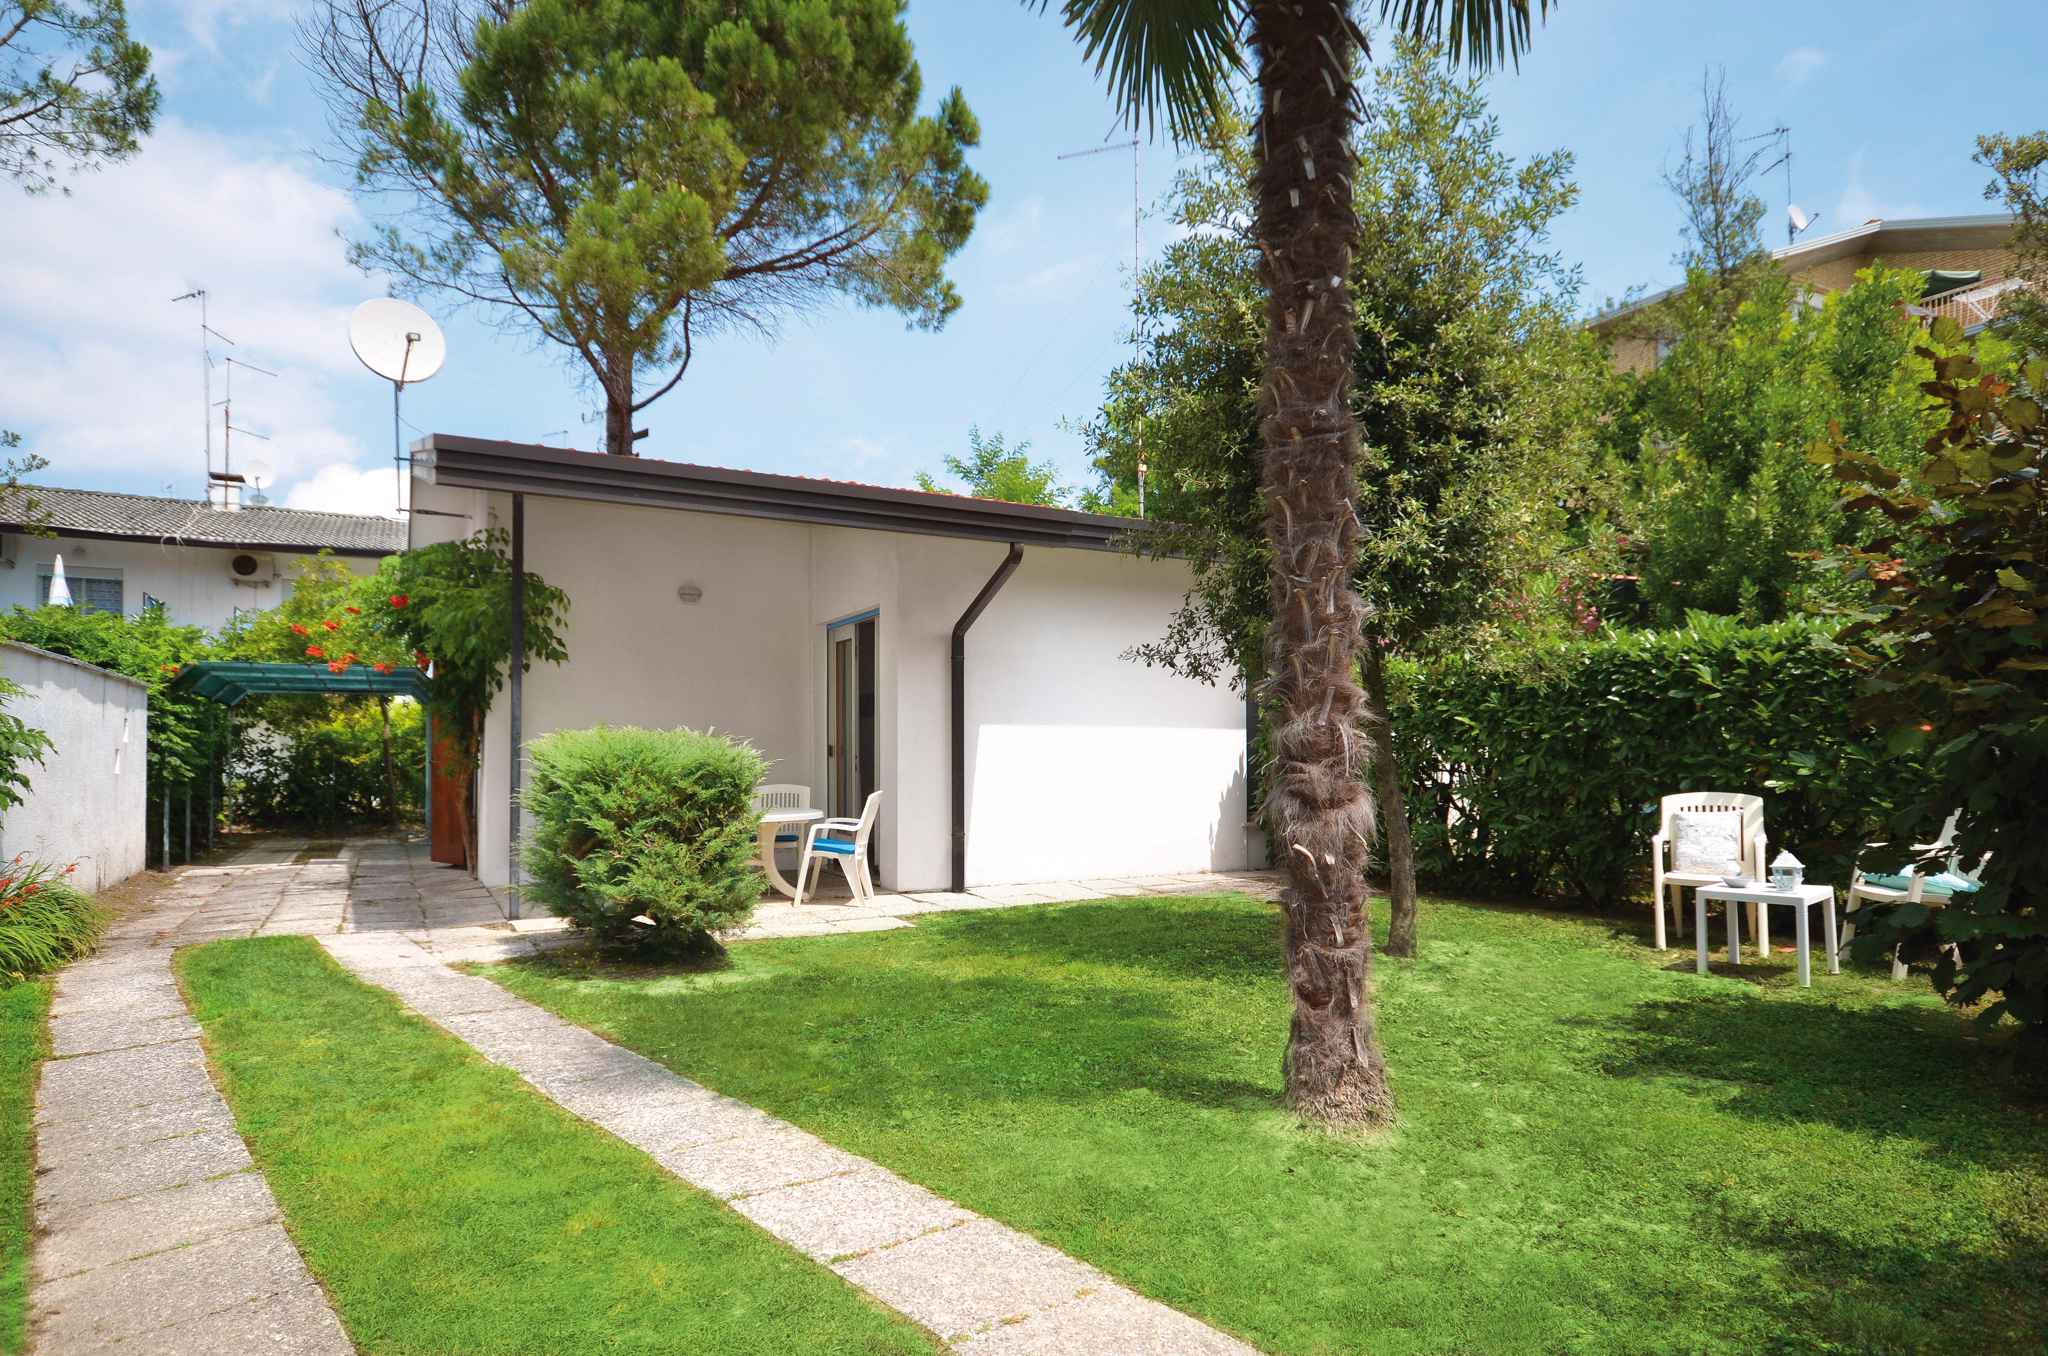 Villa in ruhiger Lage mit Garten inkl. Strandservi Ferienhaus  Venetien